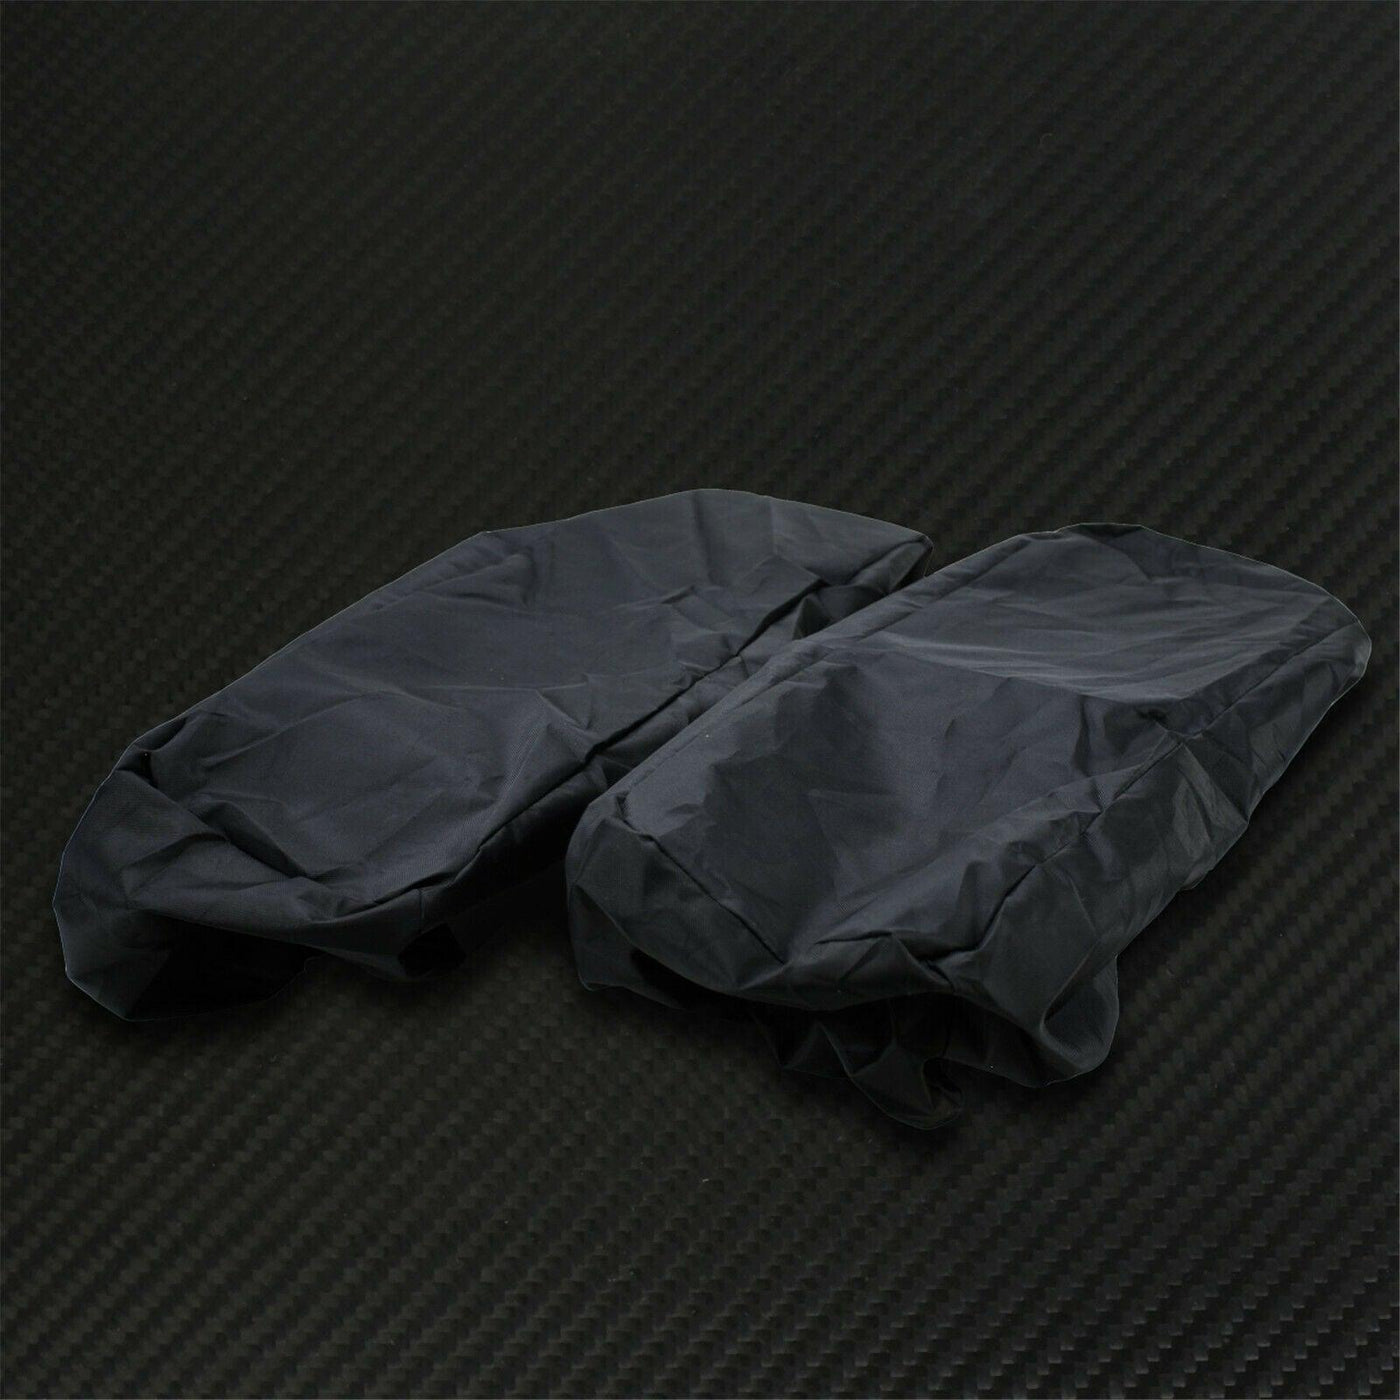 Motorcycle Waterproof Saddlebag Lid Covers Bagger Audio Rain Dust Speaker Lids - Moto Life Products